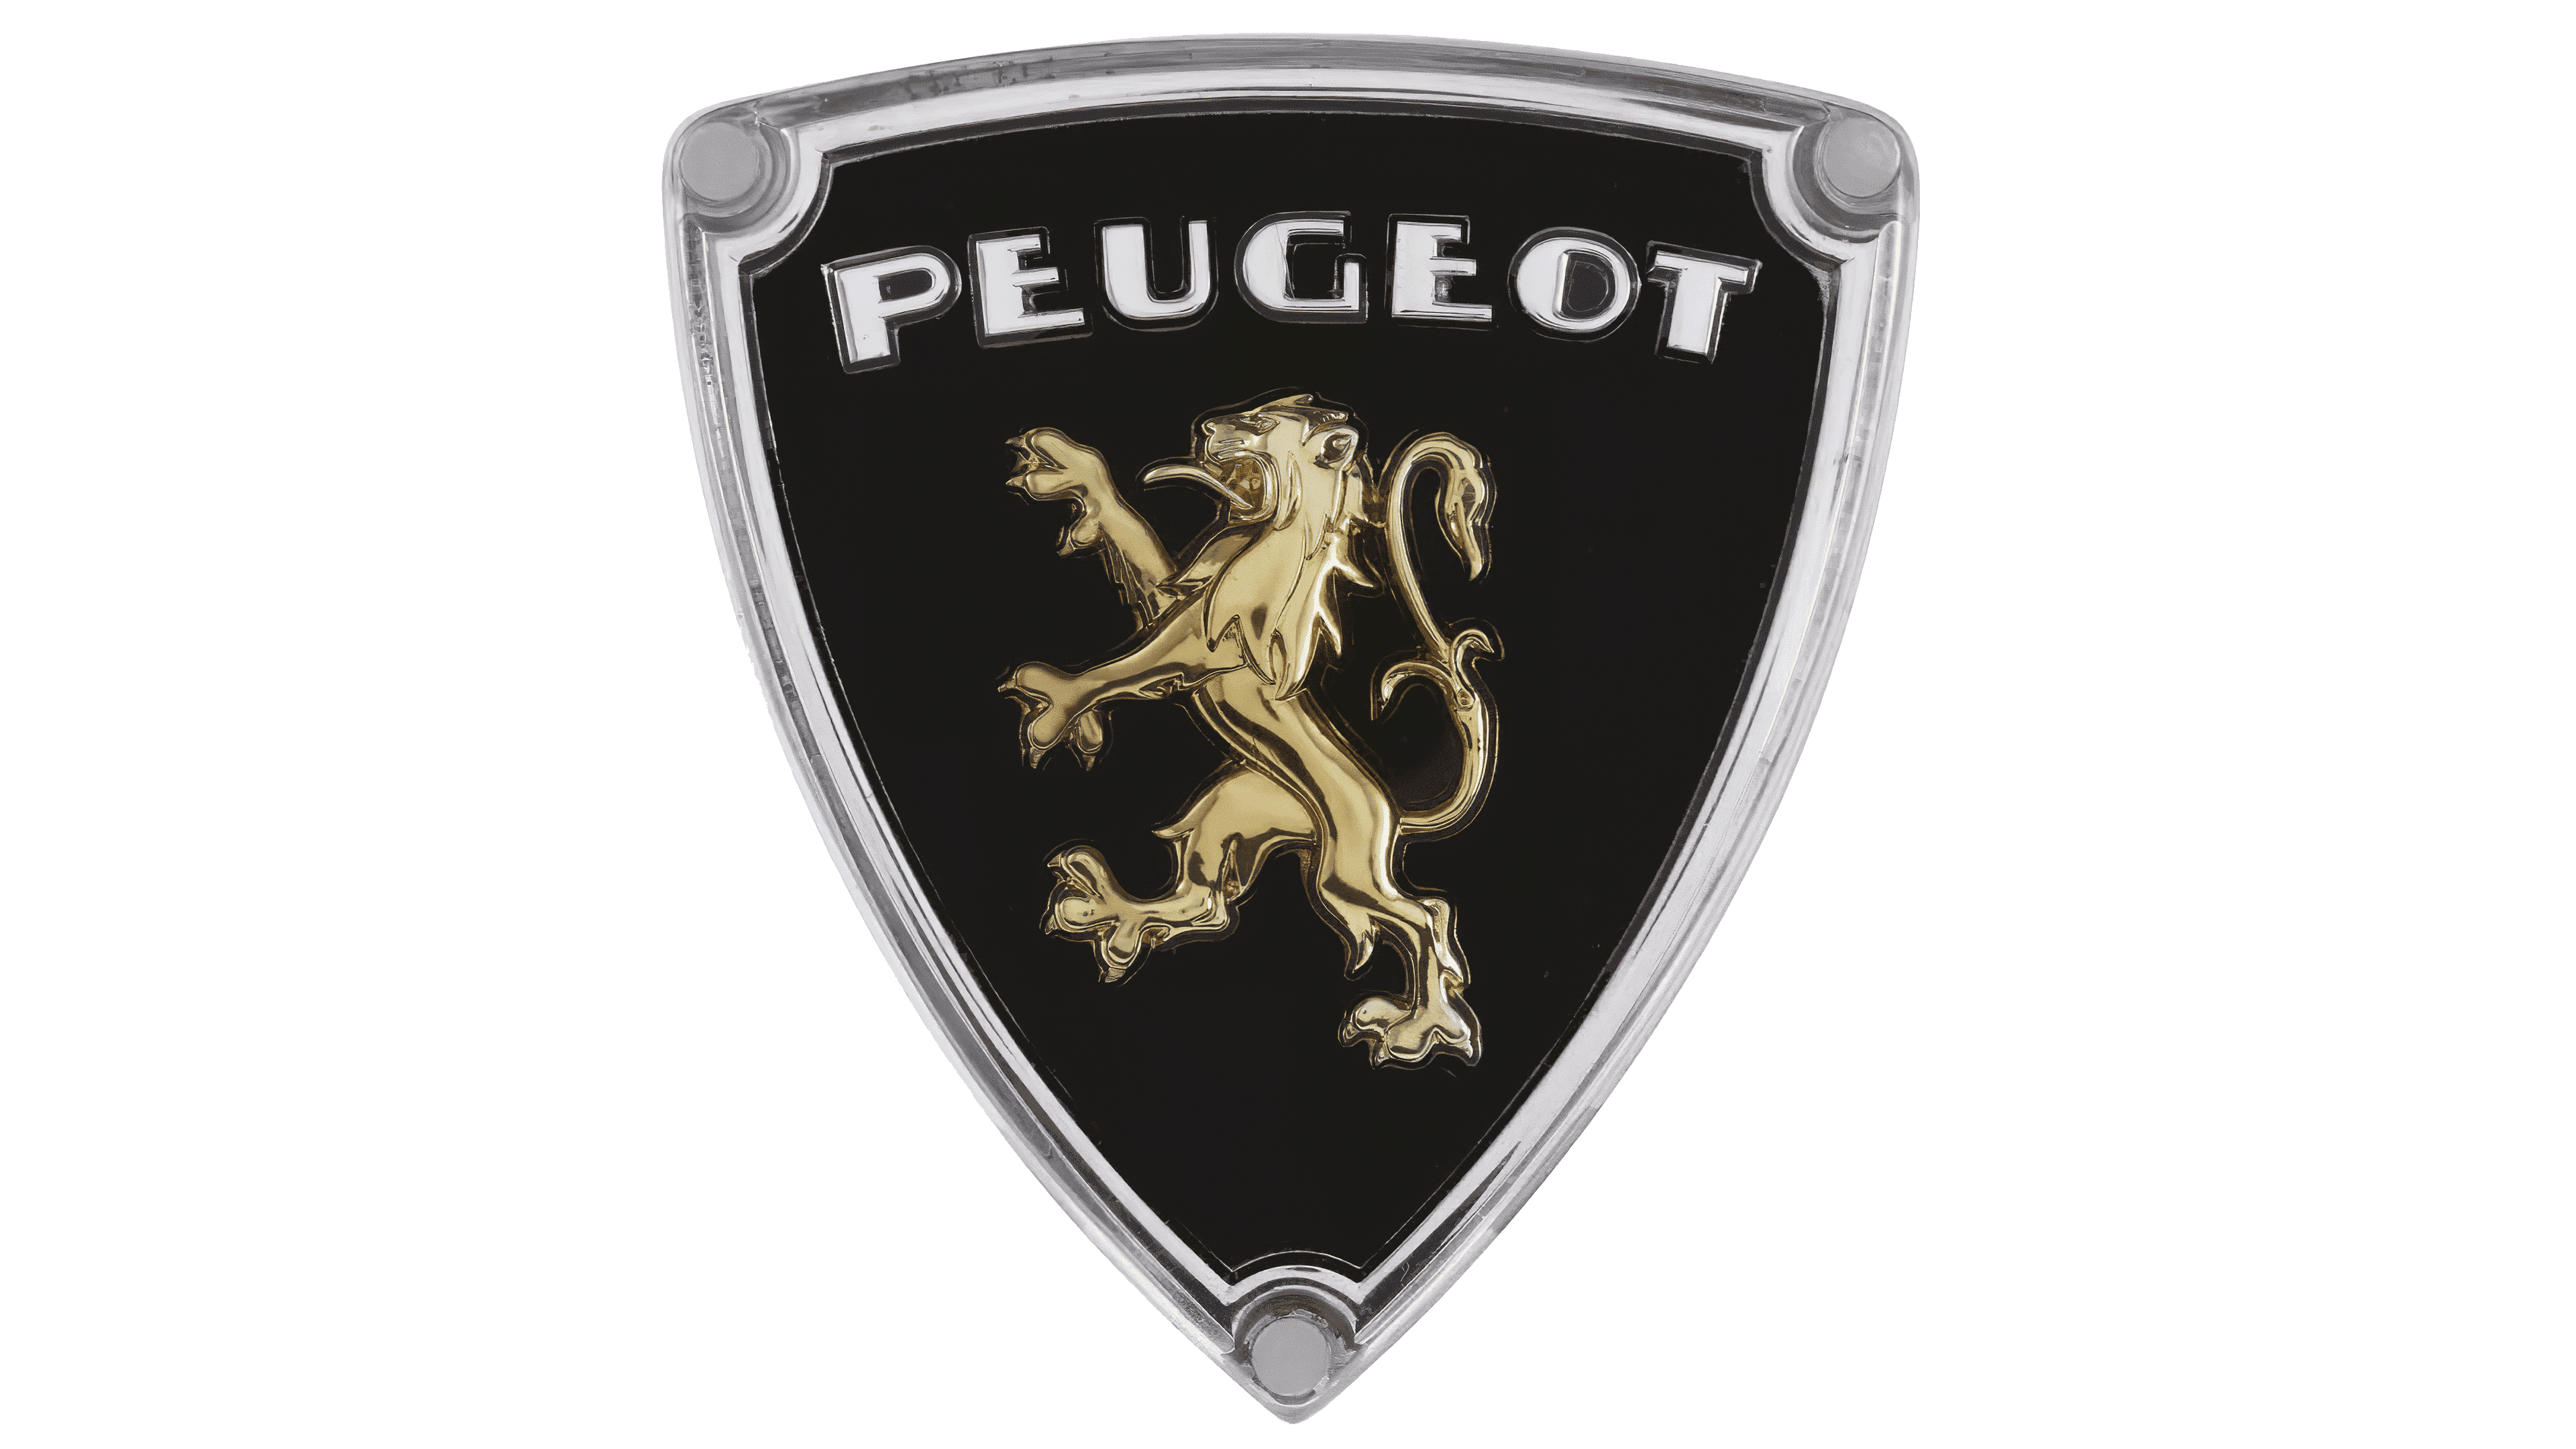 Emblème de logo Peugeot – Povcars